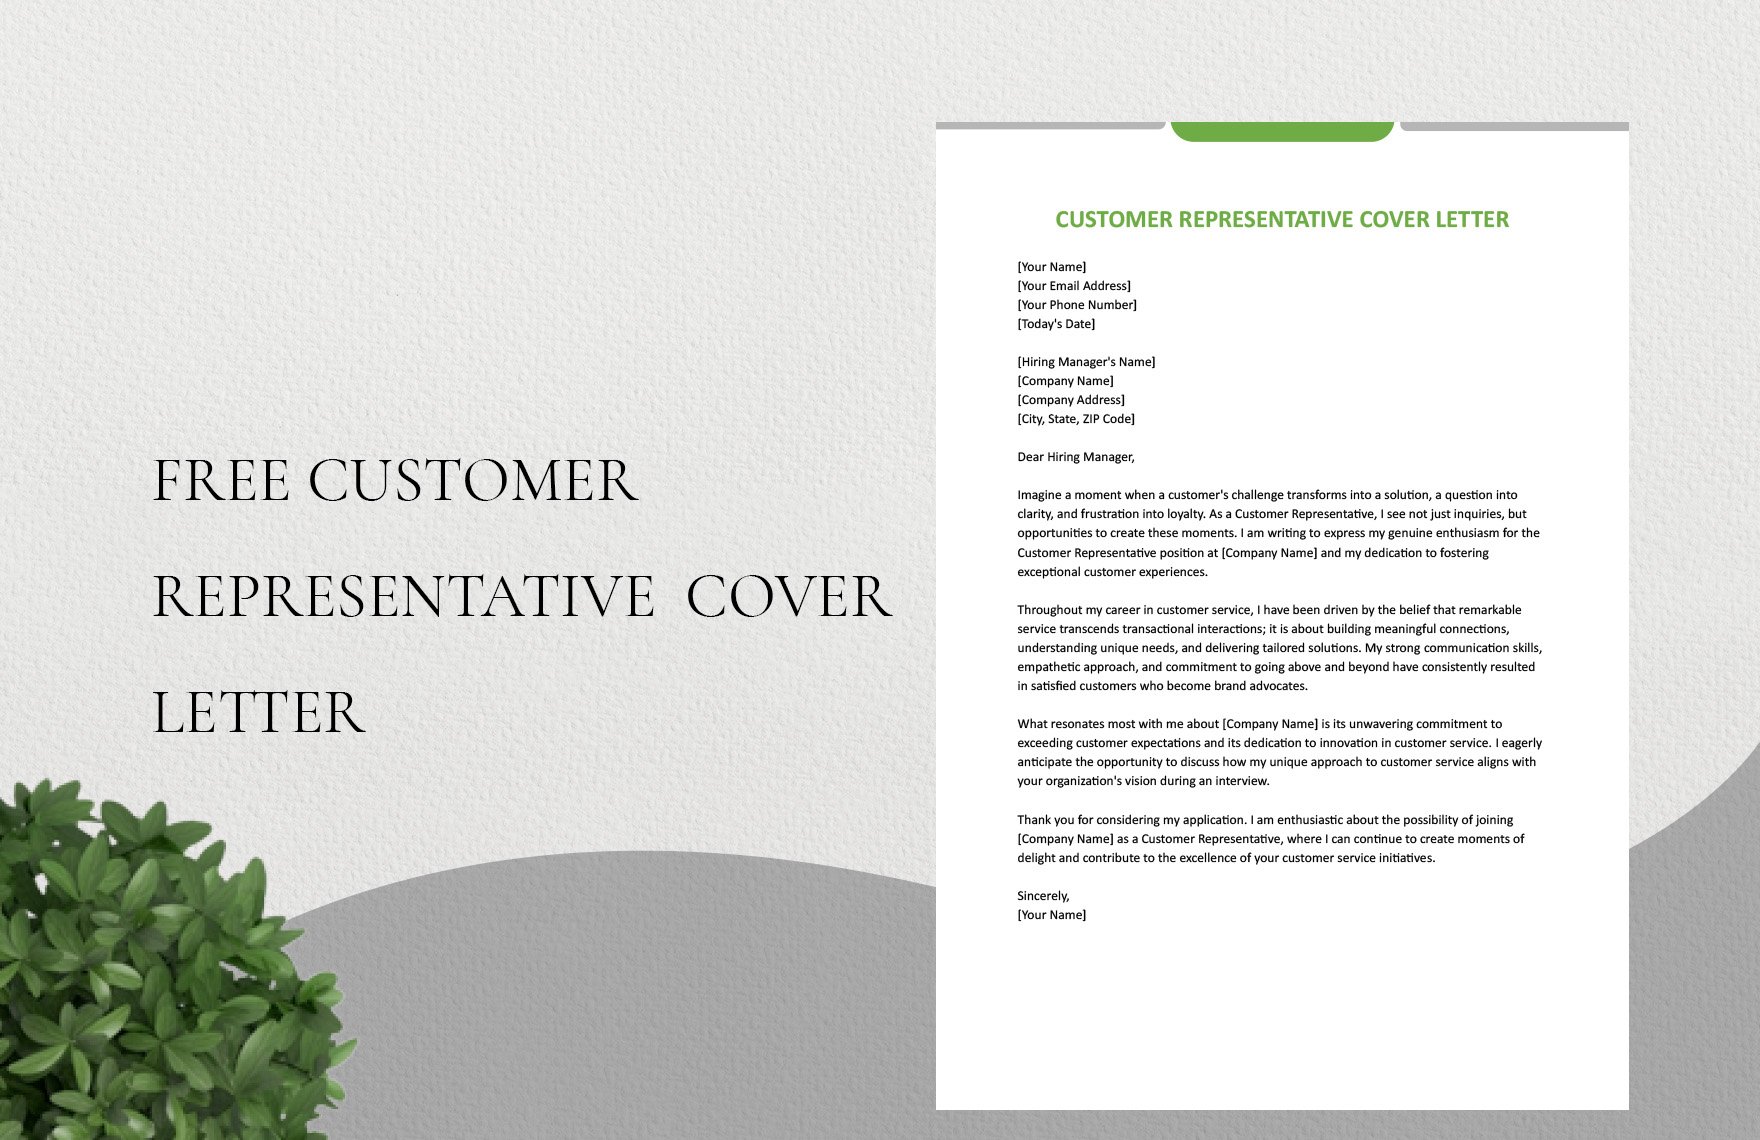 Customer Representative Cover Letter